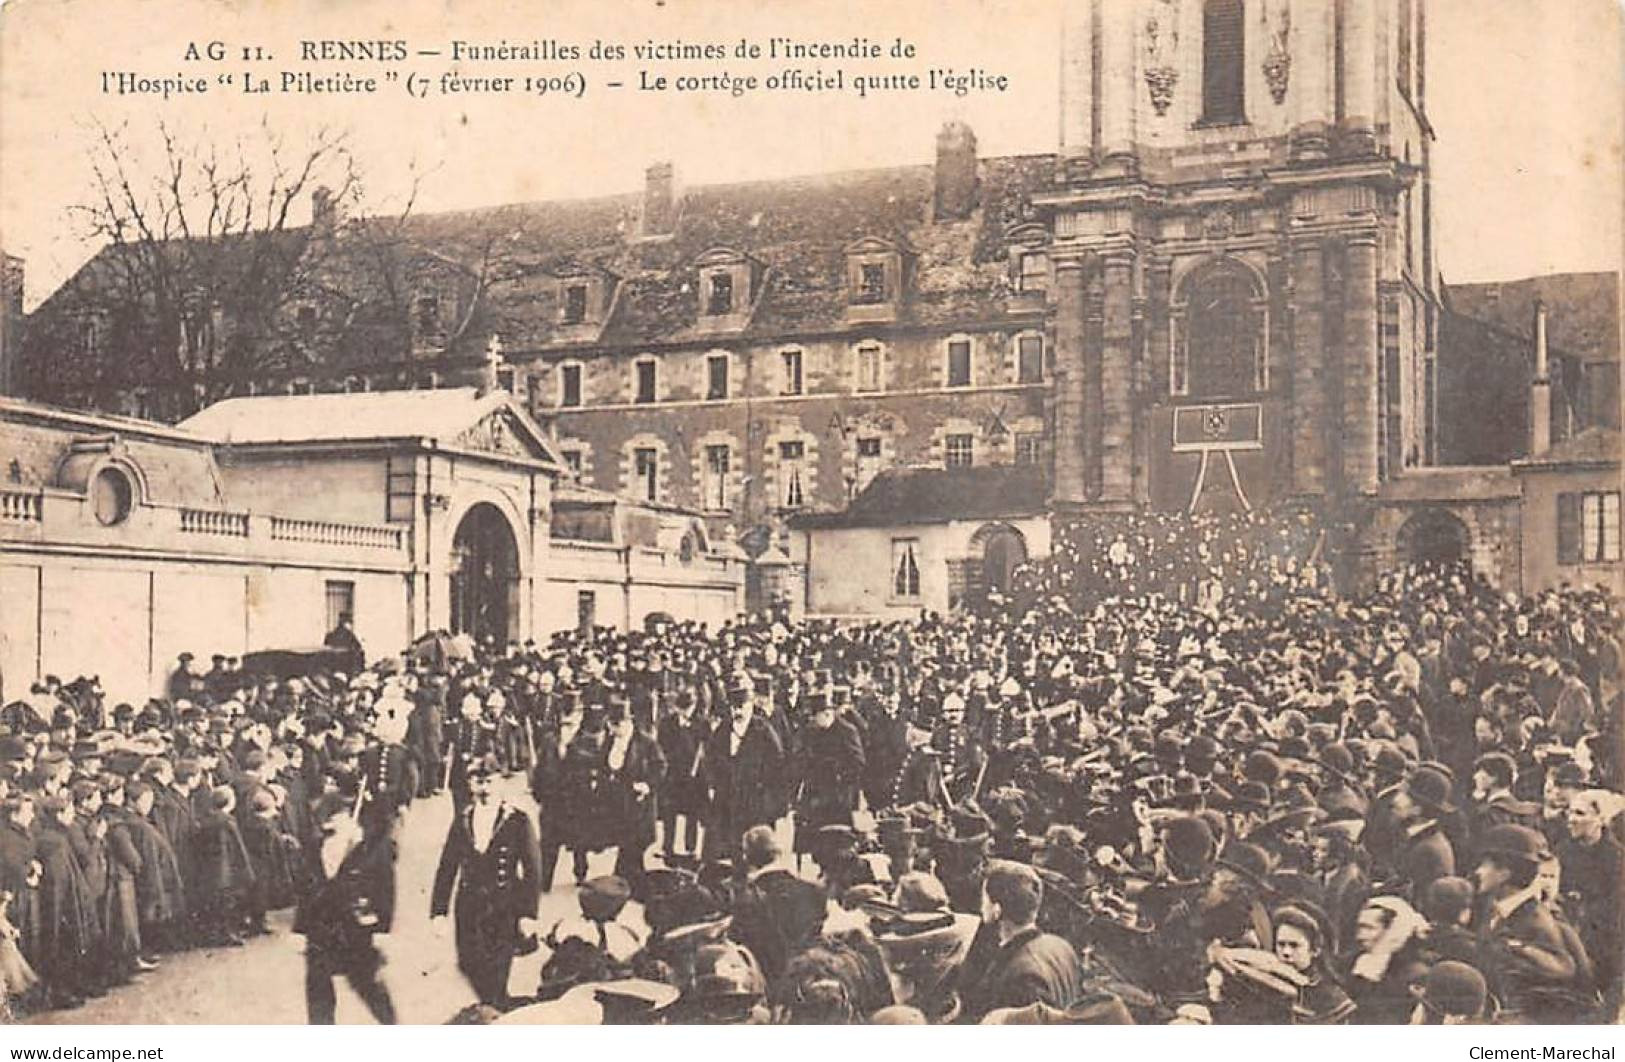 RENNES - Funérailles Des Victimes De L'incendie De L'Hospice " La Piletière " - 7 Février 1906 - état - Rennes